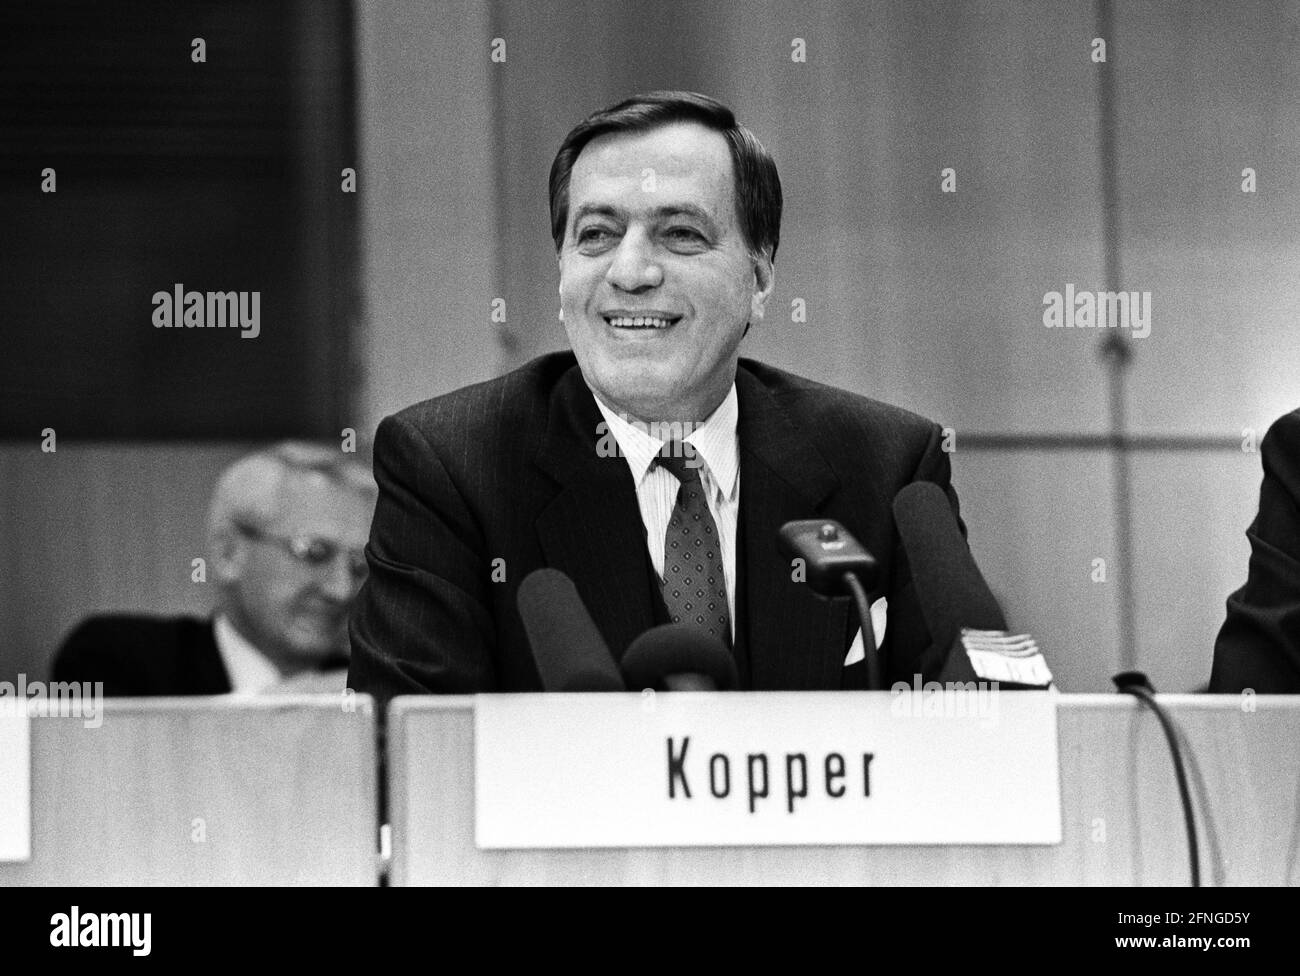 Allemagne, Francfort, 29.03.1990. Archive No.: 15-4-02 Conférence de presse annuelle de la Deutsche Bank photo: Hilmar Kopper, Président du Conseil d'Administration [traduction automatique] Banque D'Images